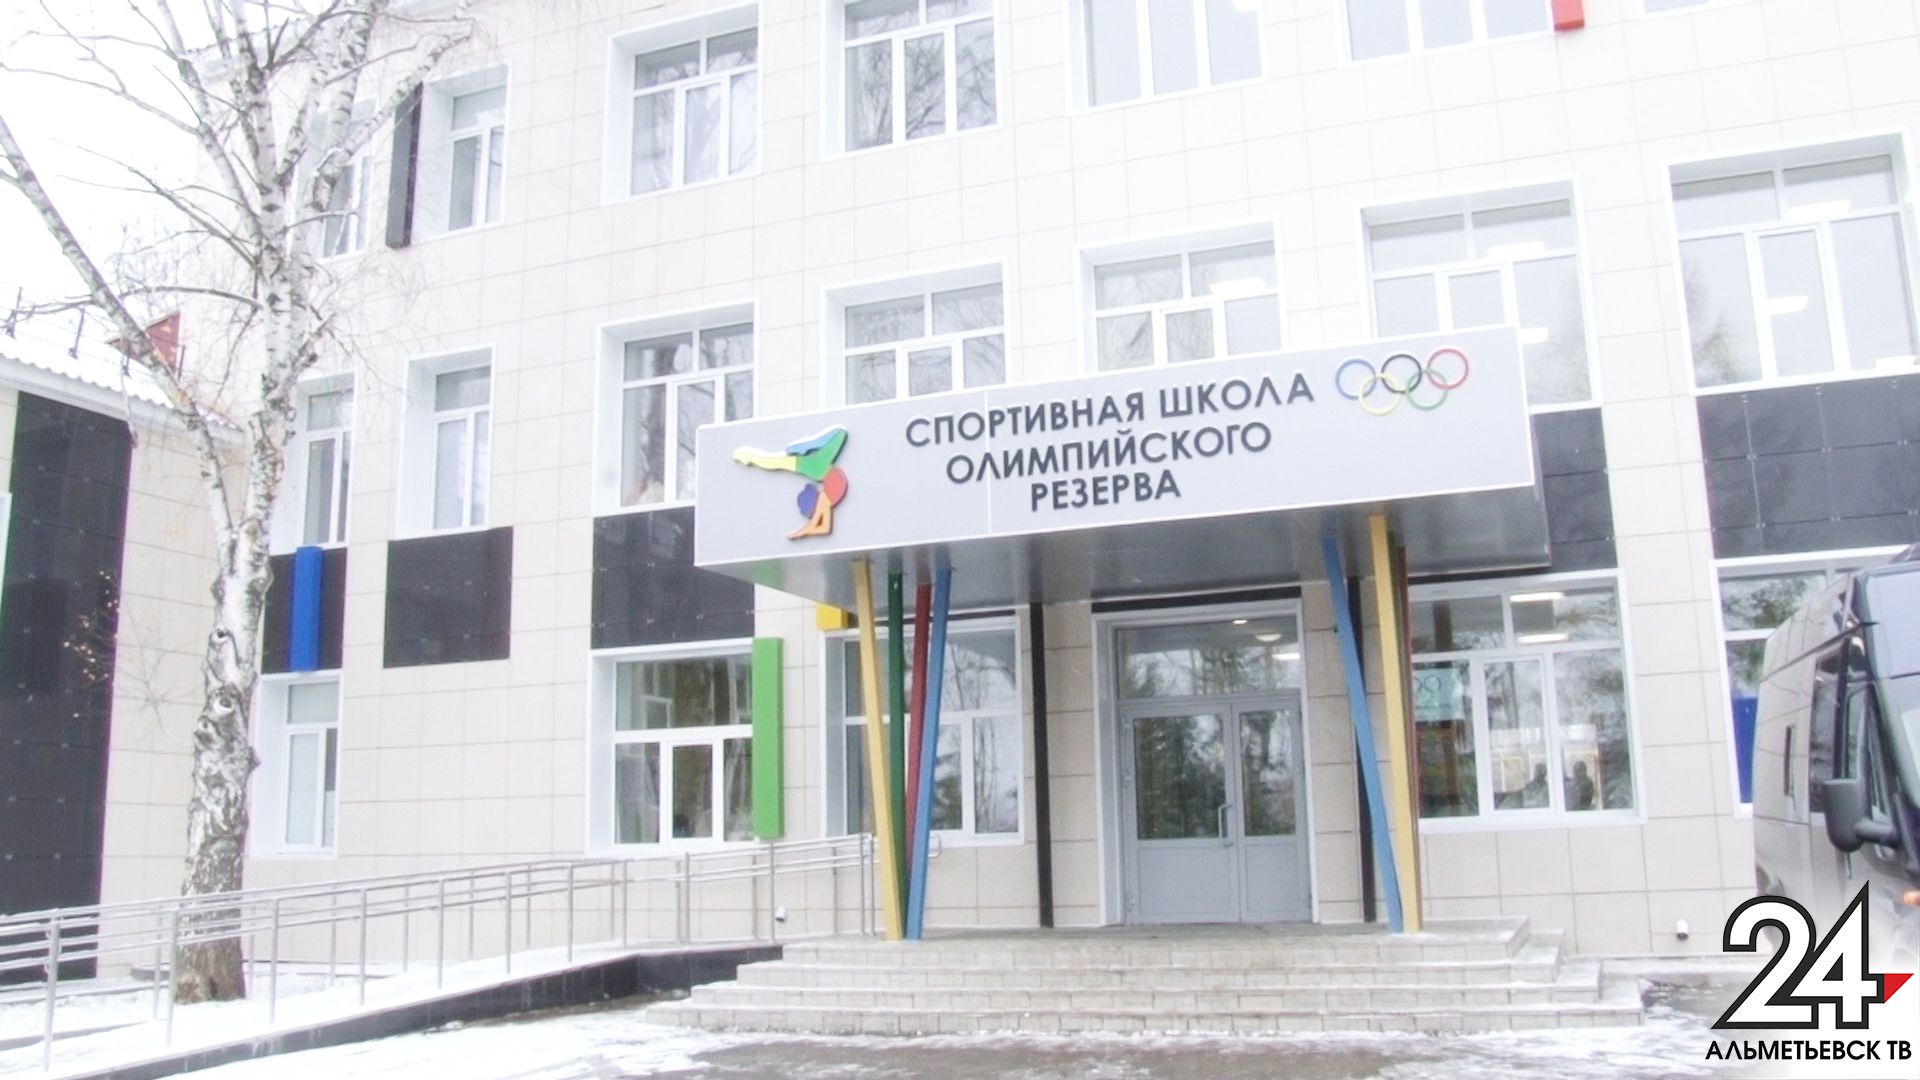 Спортивную школу Олимпийского резерва открыли после капремонта в Альметьевске